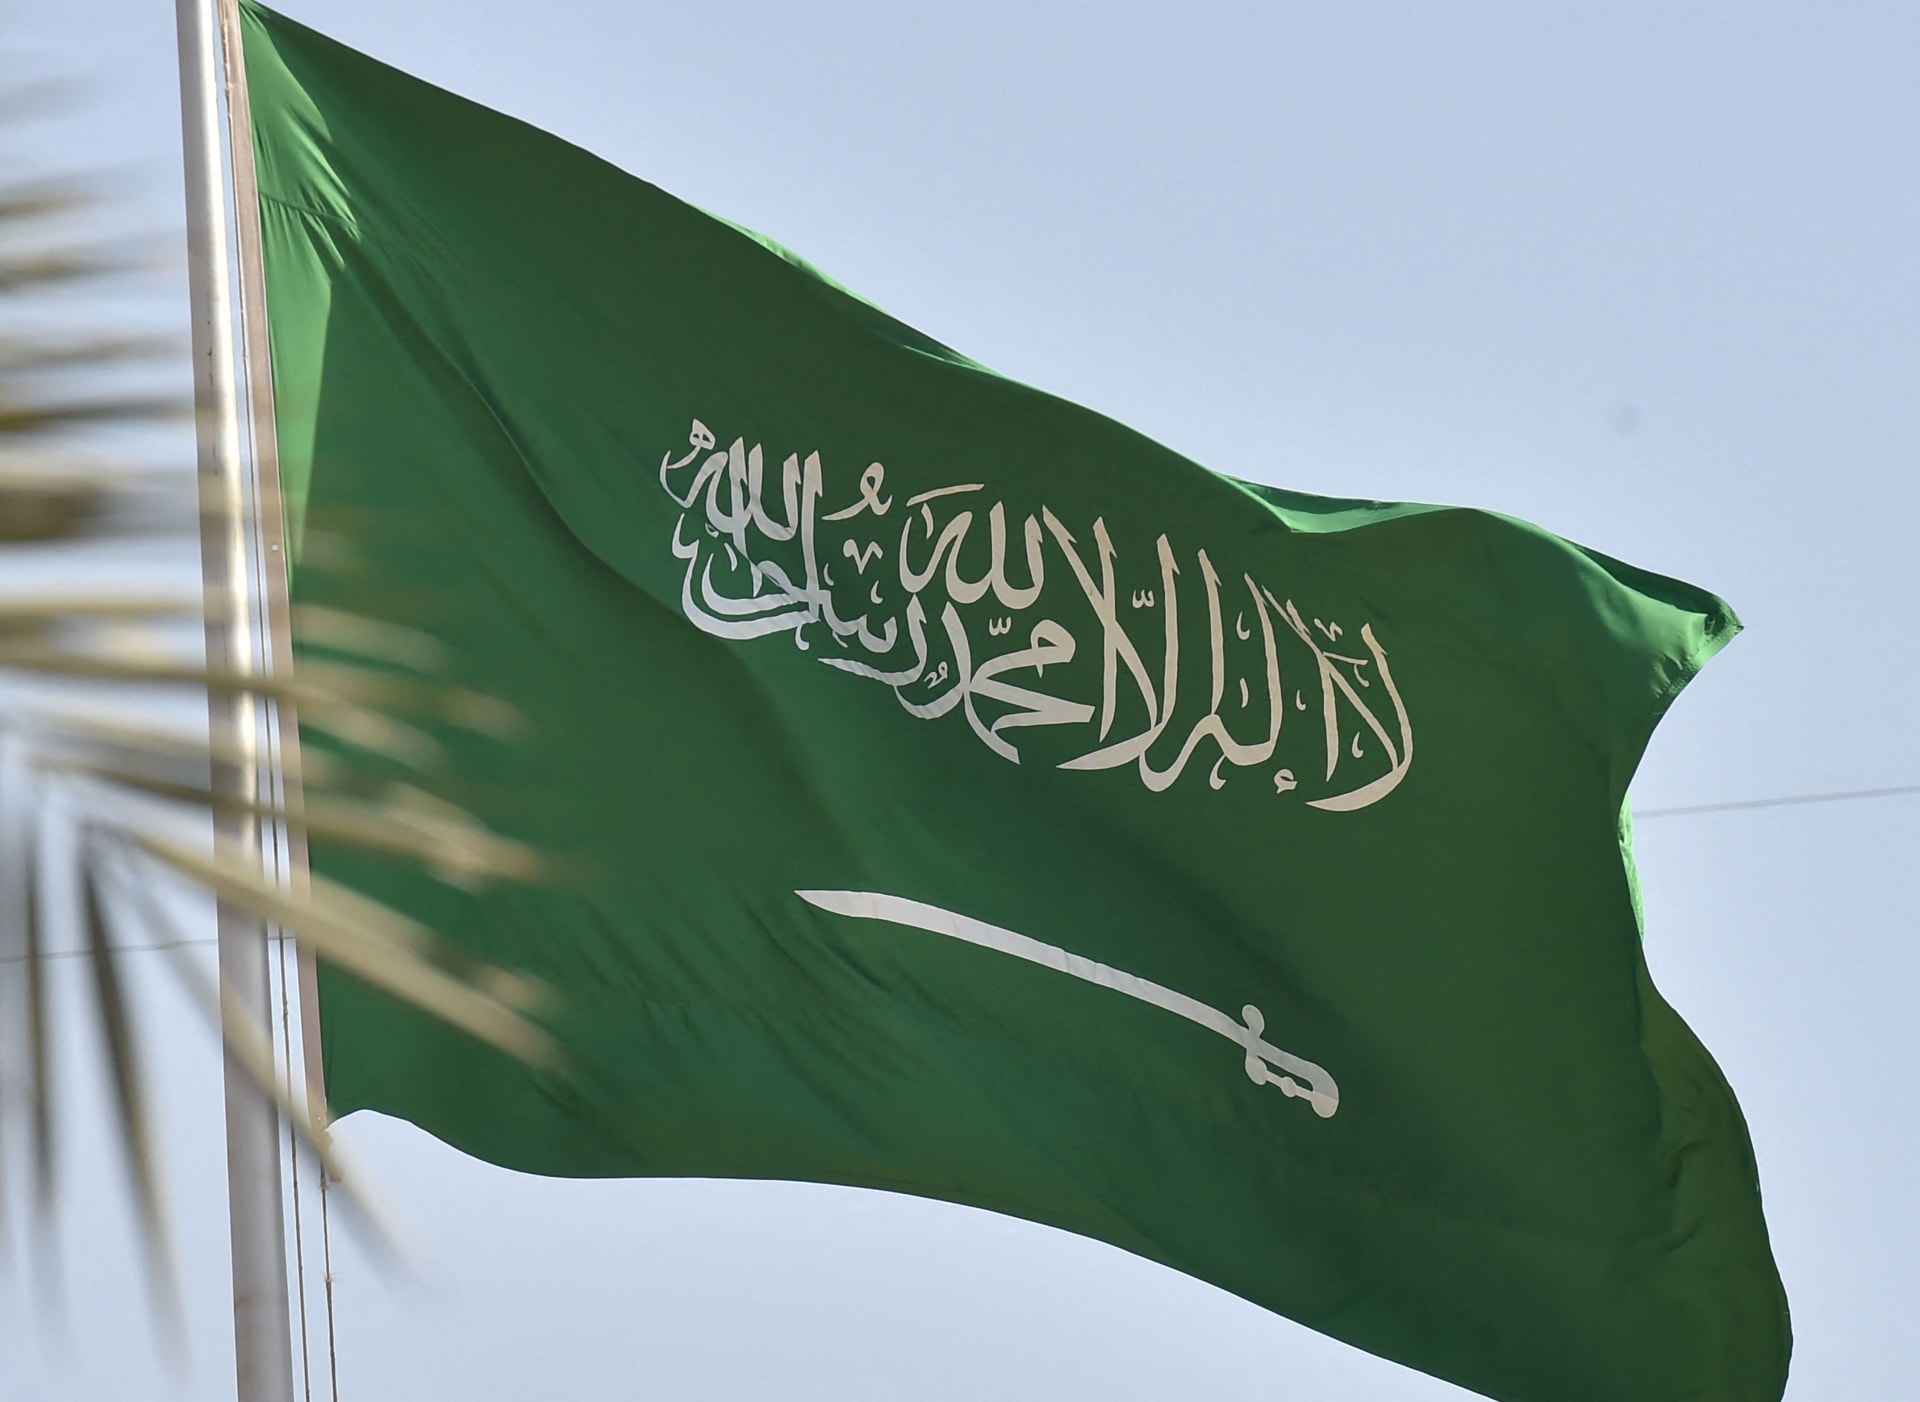 السعودية تصدر تأشيرة بديلة دون رسوم في هذه الحاله !!(تفاصيل هامة)